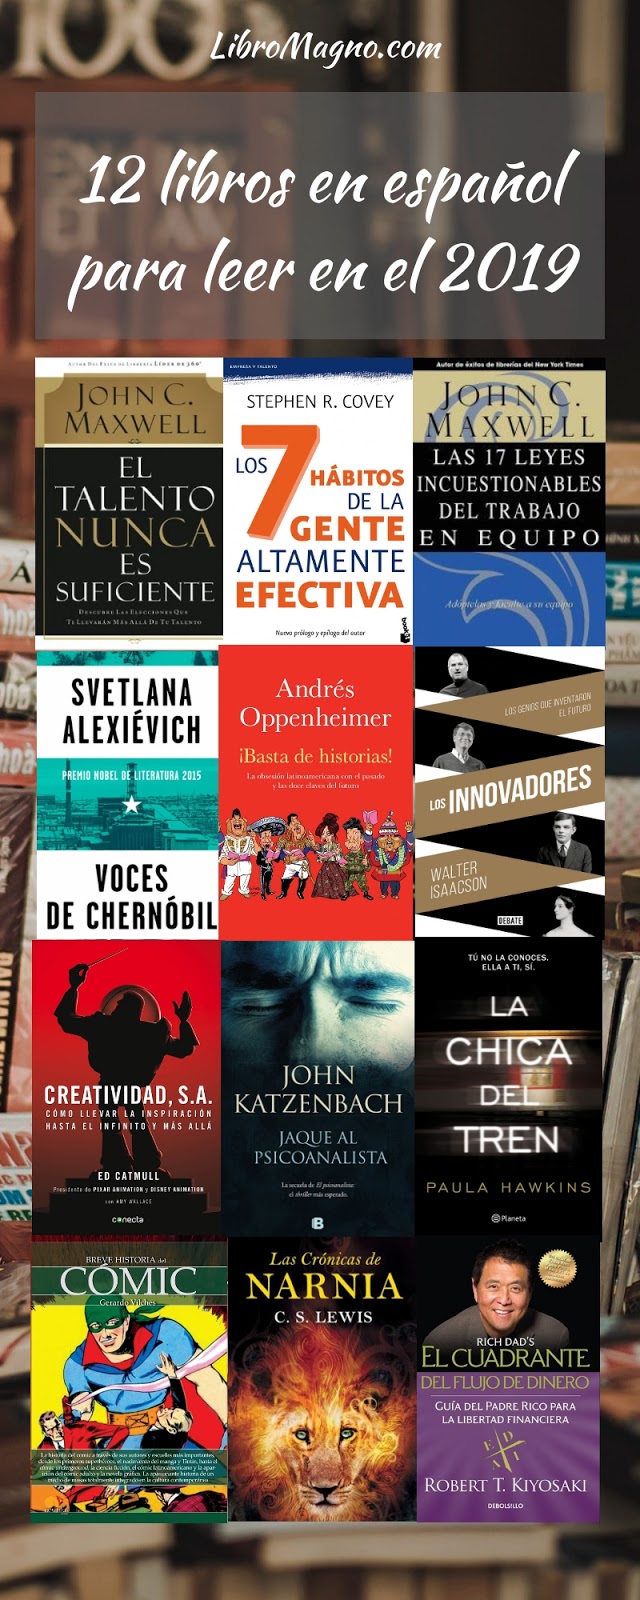 LibroMagno.com: [Consejo] libros español para leer en el 2019 [Incluye Infografía]